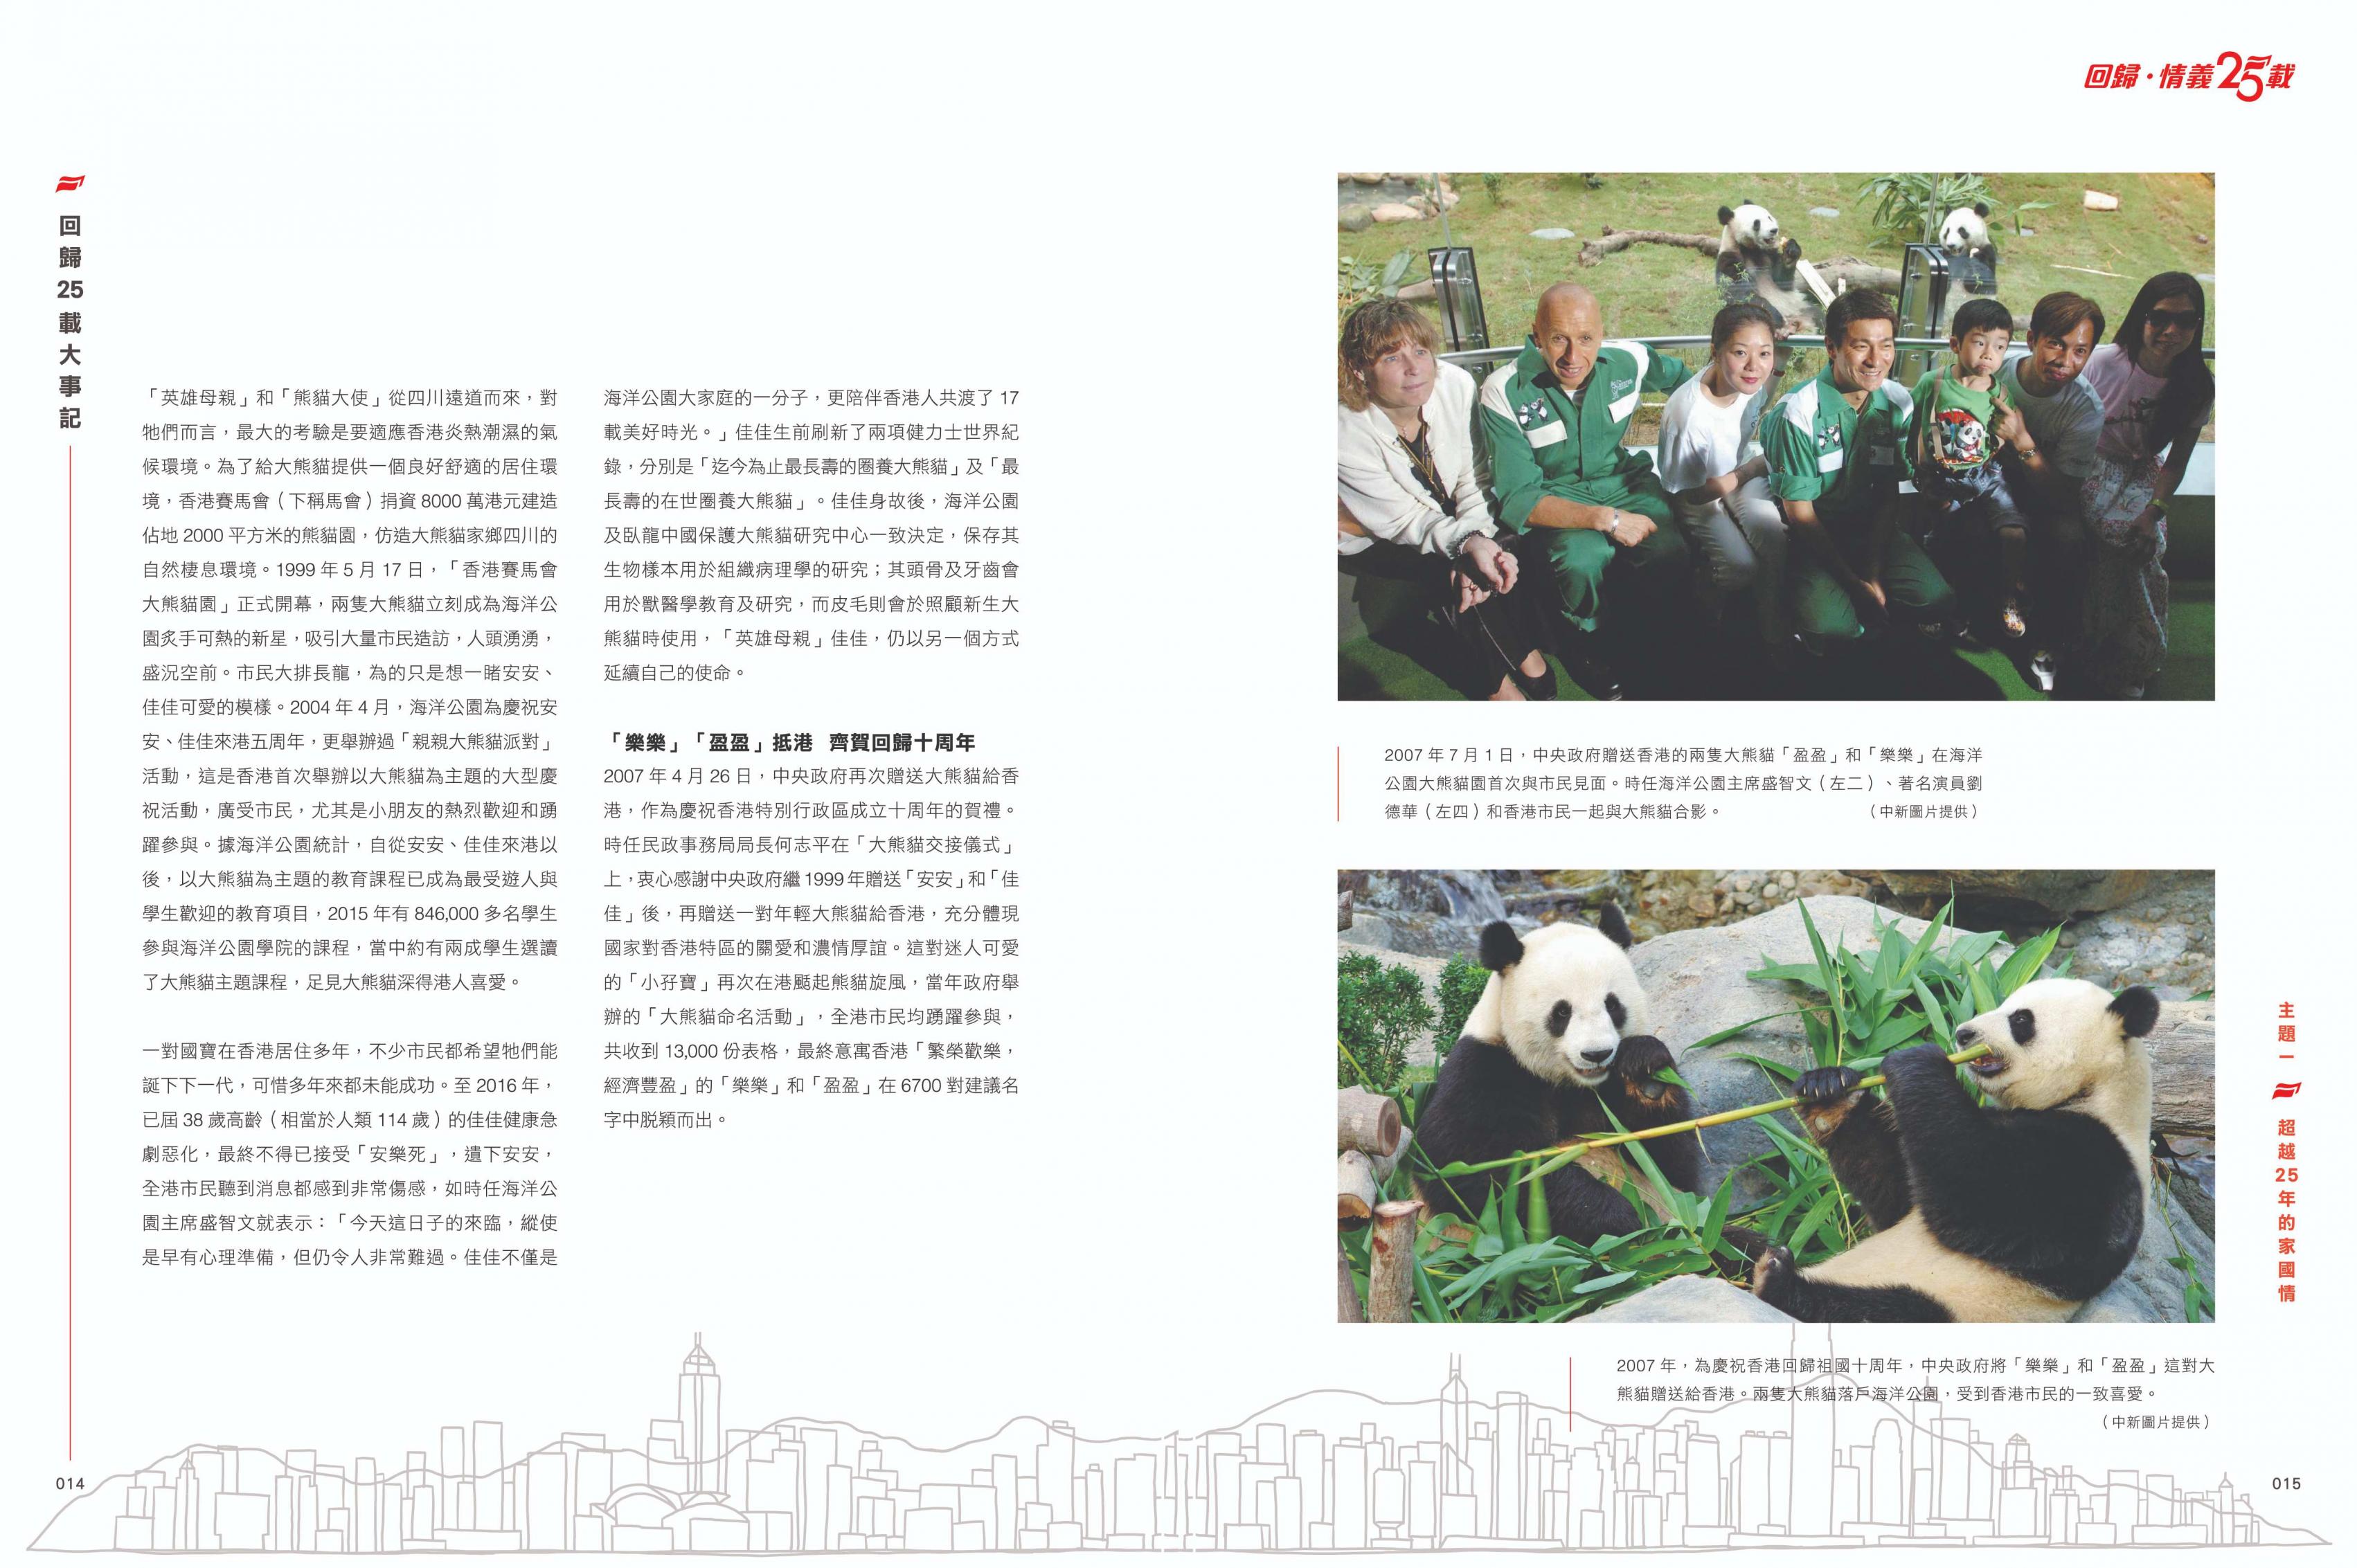 新書記述2007年中央政府贈送香港的兩隻大熊貓「盈盈」和「樂樂」在海洋公園首次與市民見面。